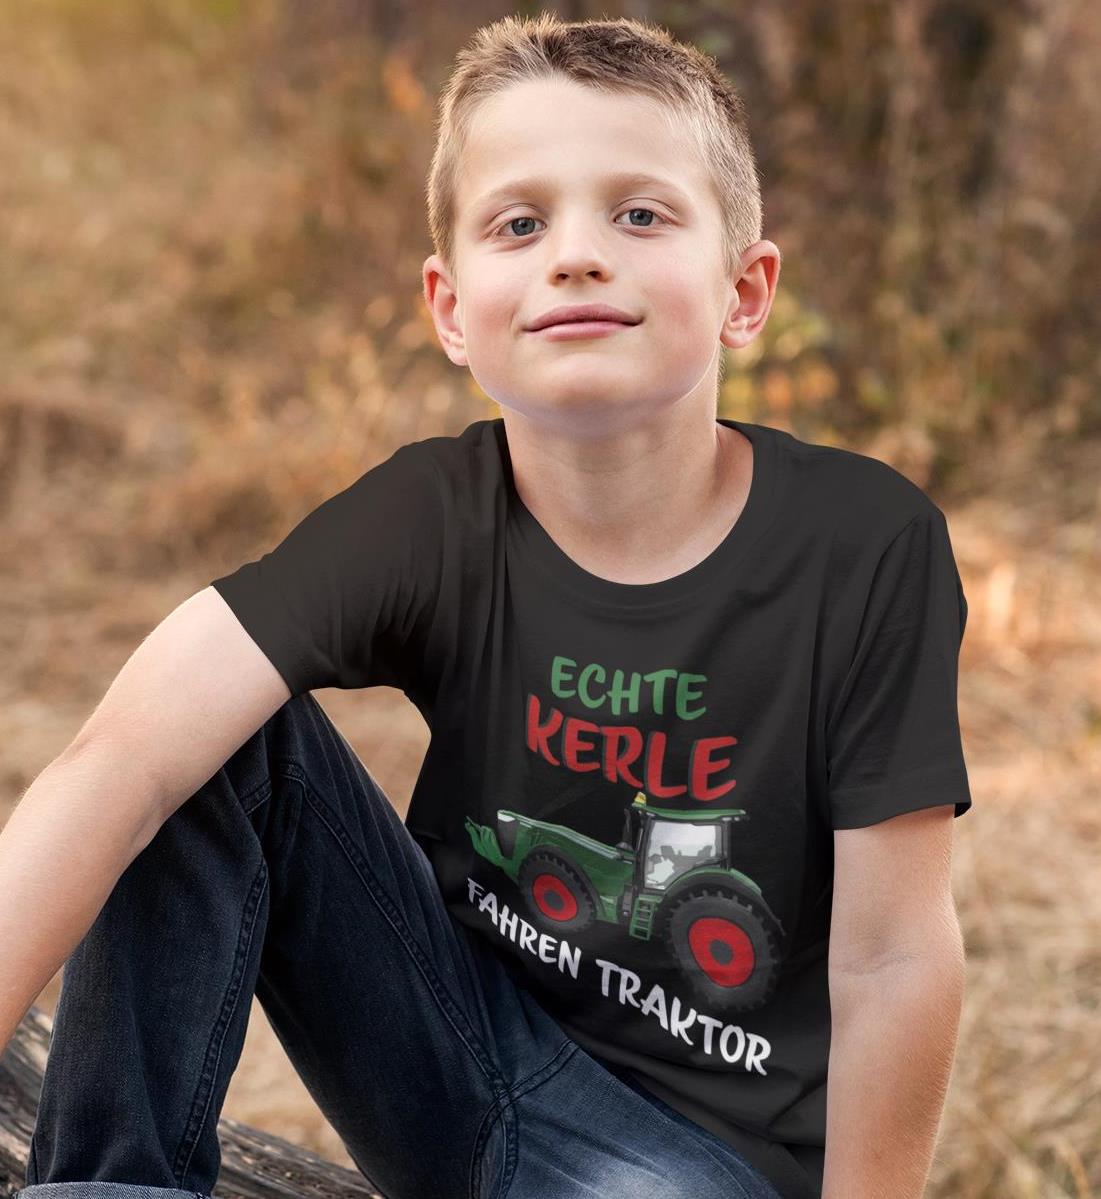 Echte Kerle fahren Traktor  - Kinder Organic T-Shirt